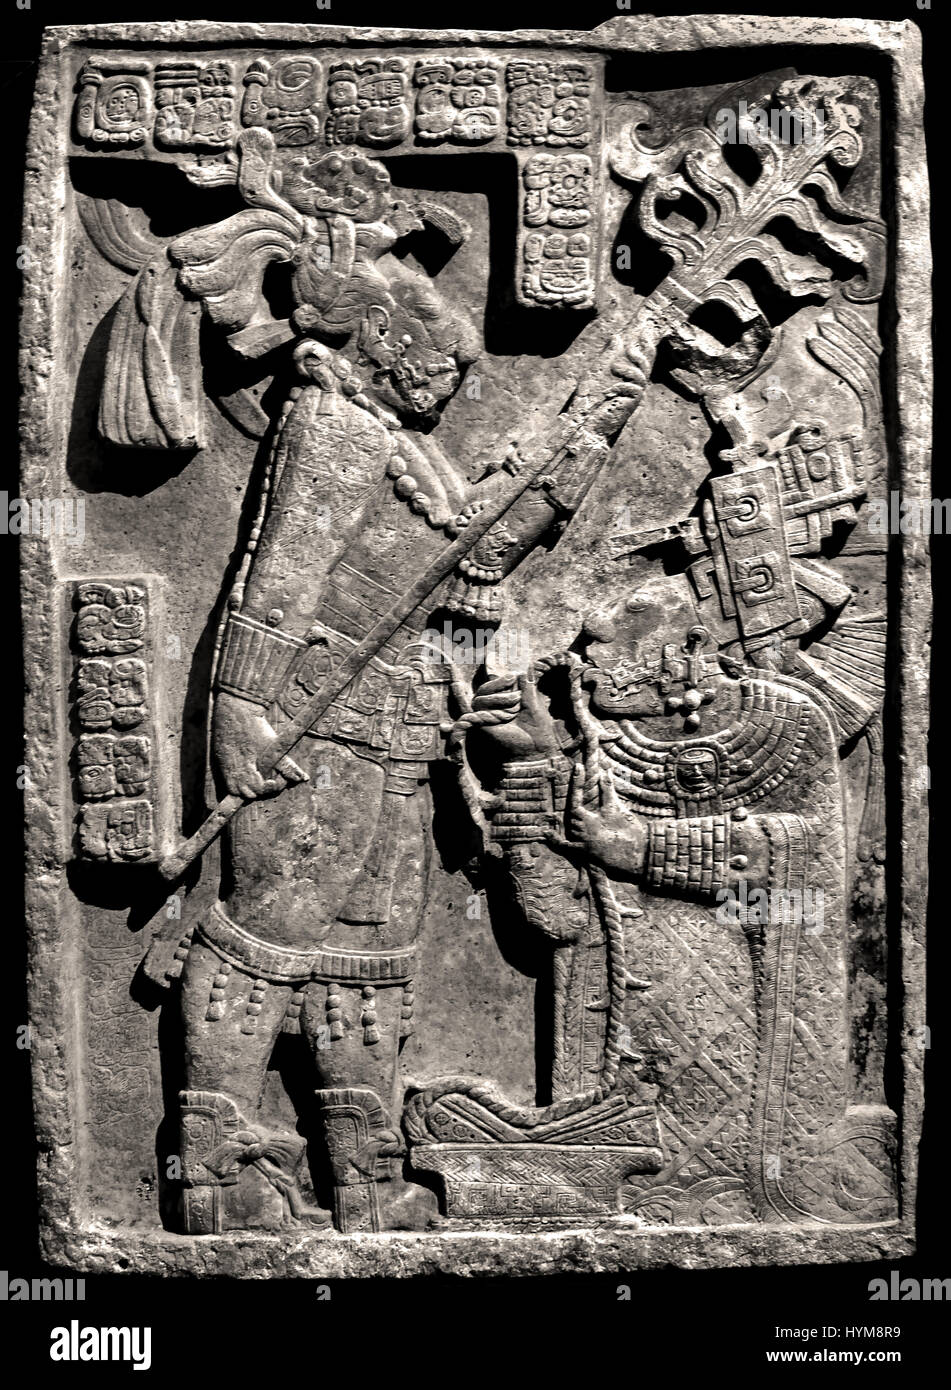 Les linteaux linteau - Yaxchilan 24 rituel saignée par le roi de Yaxchilan, Bouclier Jaguar II et son épouse, Lady K'ab'al Xook. Le roi tient une torche enflammée sur sa femme, qui tire une épineuse la corde dans sa langue. 723-726 Maya classique ( les Mayas - la civilisation Maya est une civilisation méso-américaine dans le Yucatán au Mexique et au Belize en Amérique centrale ( 2600 BC - 1500 ) Américain Précolombien ) Banque D'Images